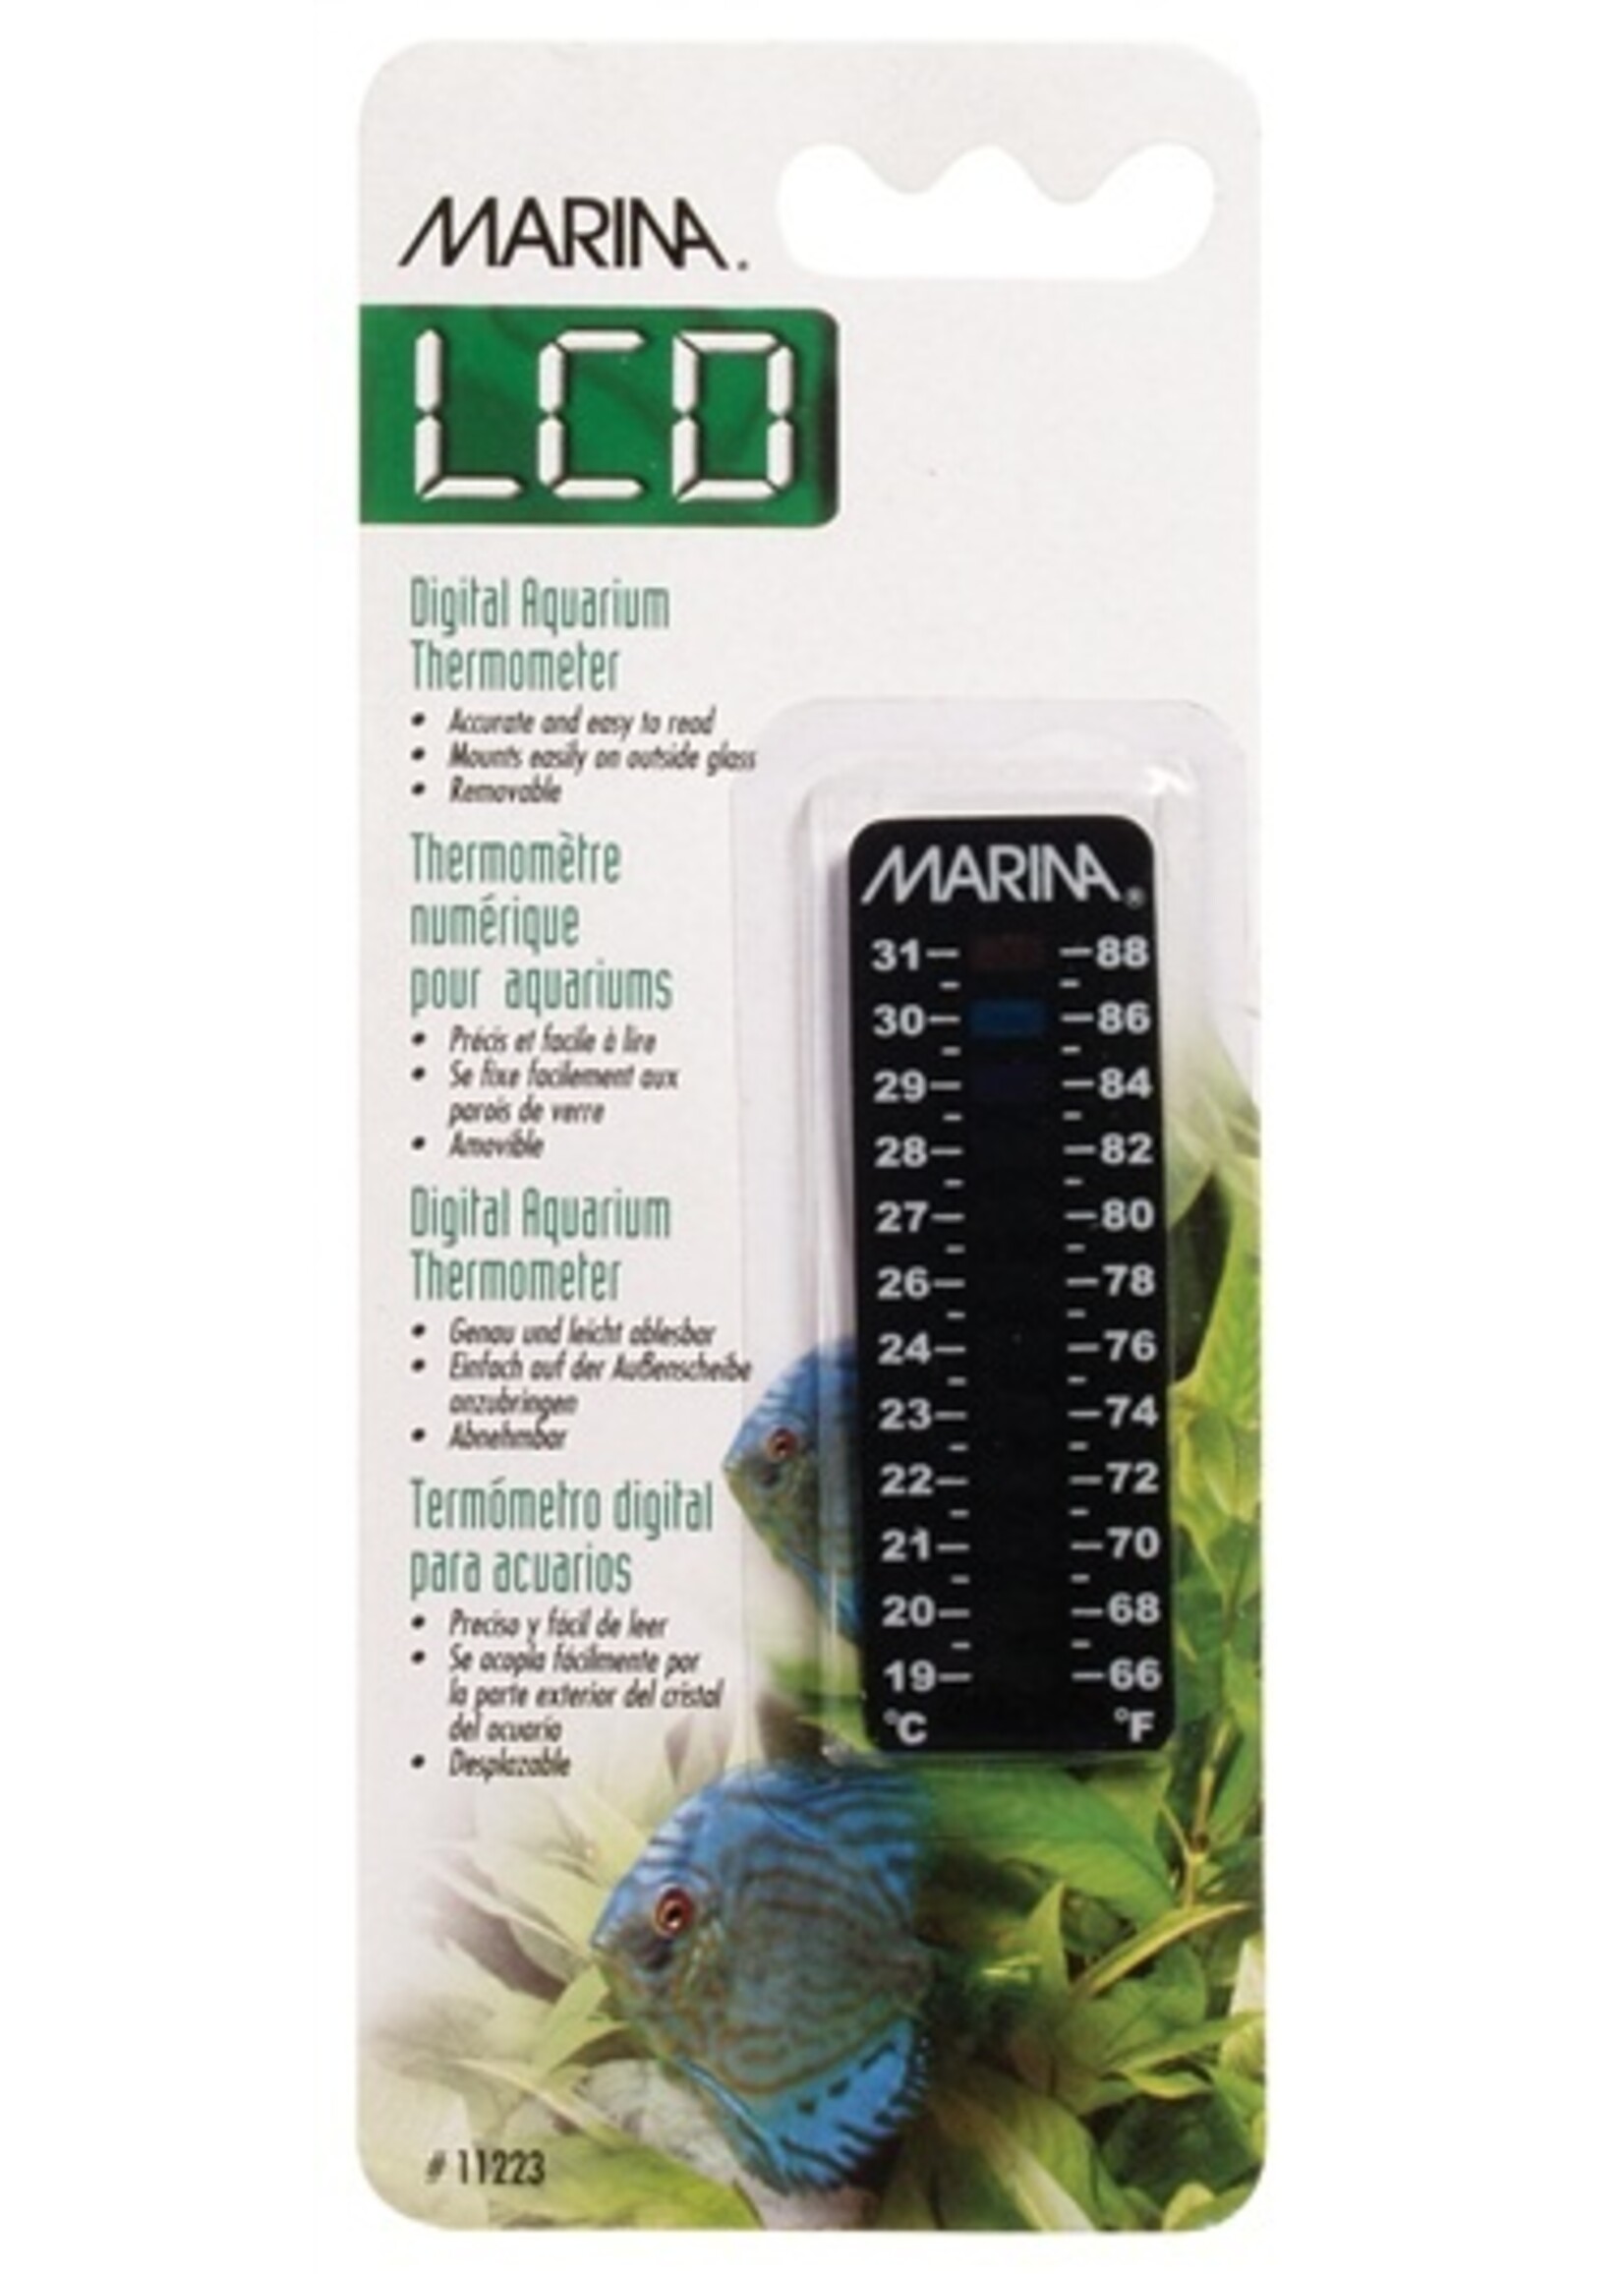 Marina Marina LCD Aquarium Thermometer-Centigrade-Fahrenheit- 19 to 31C (66 to 88F)